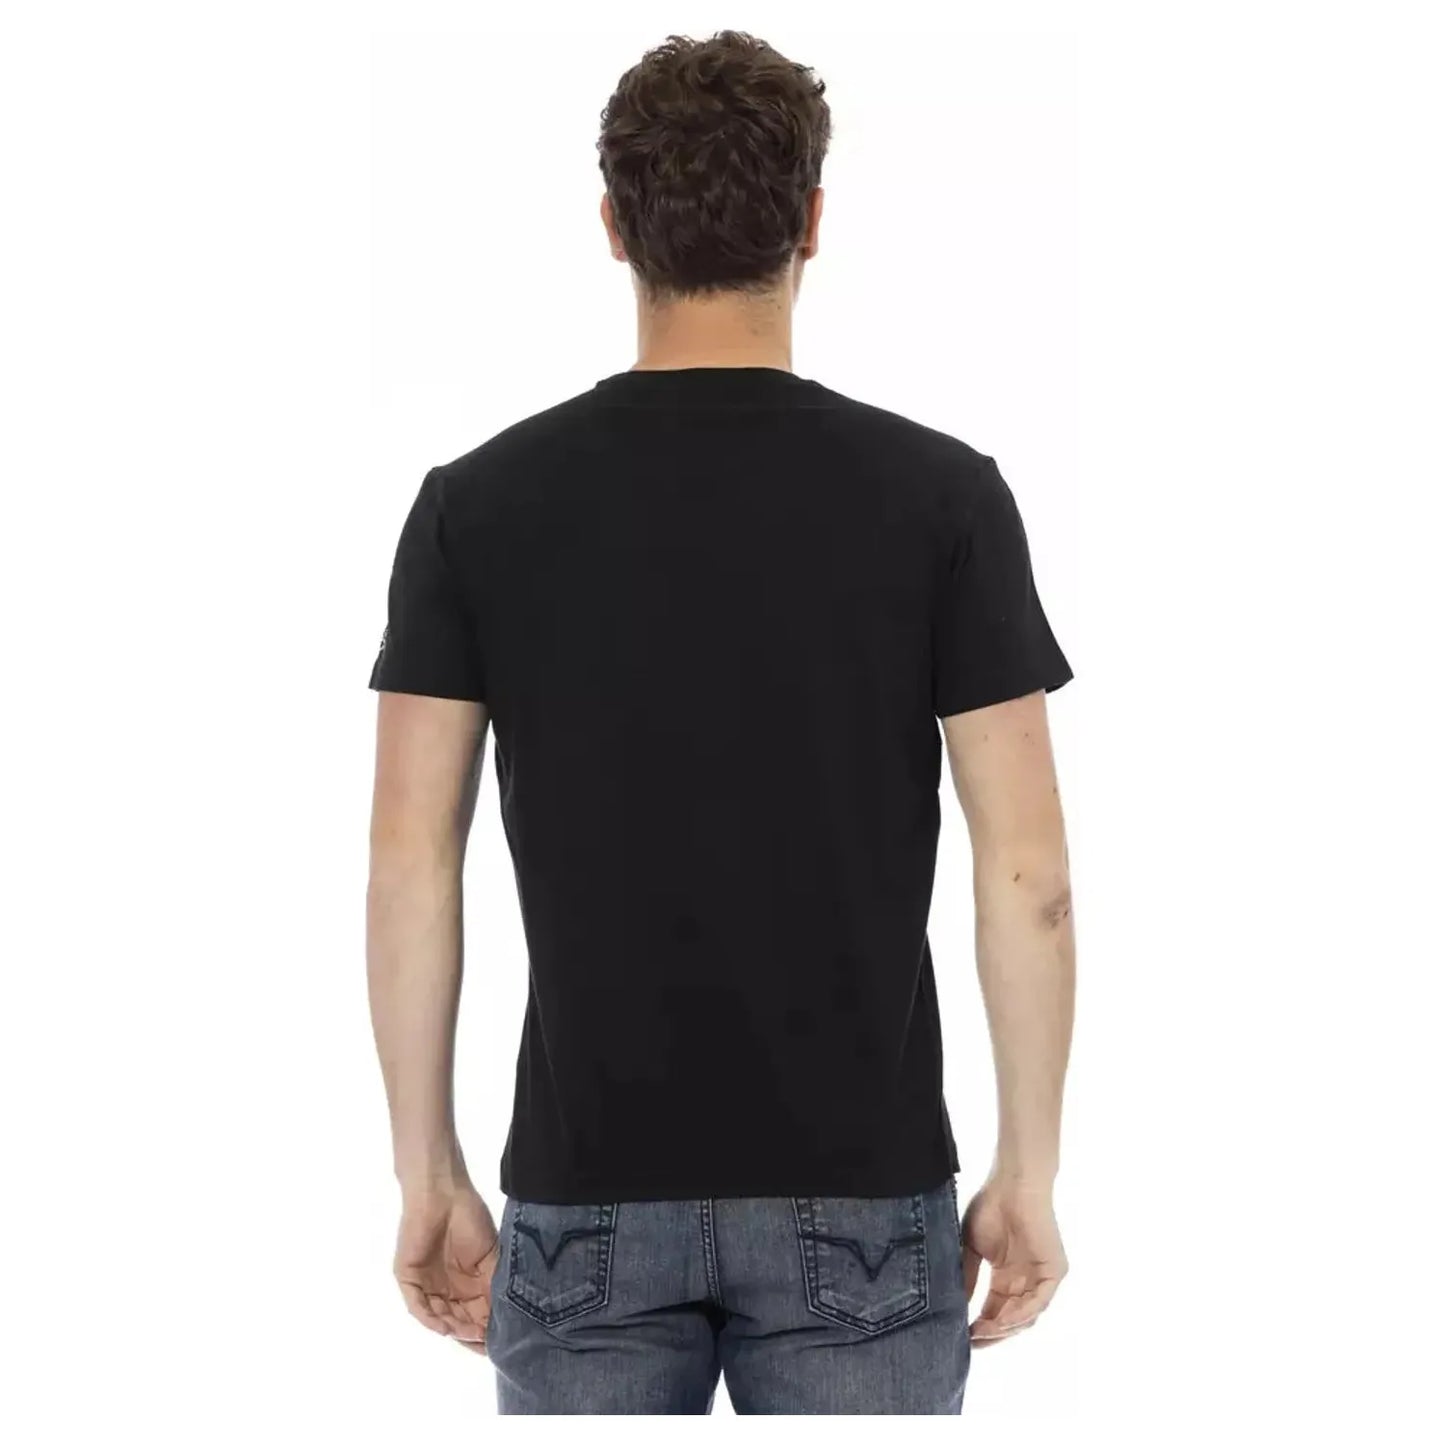 Trussardi Action Elegant Casual Black Tee with Unique Front Print black-cotton-t-shirt-32 product-22687-2039330431-24-0e35ed5c-8e3.webp